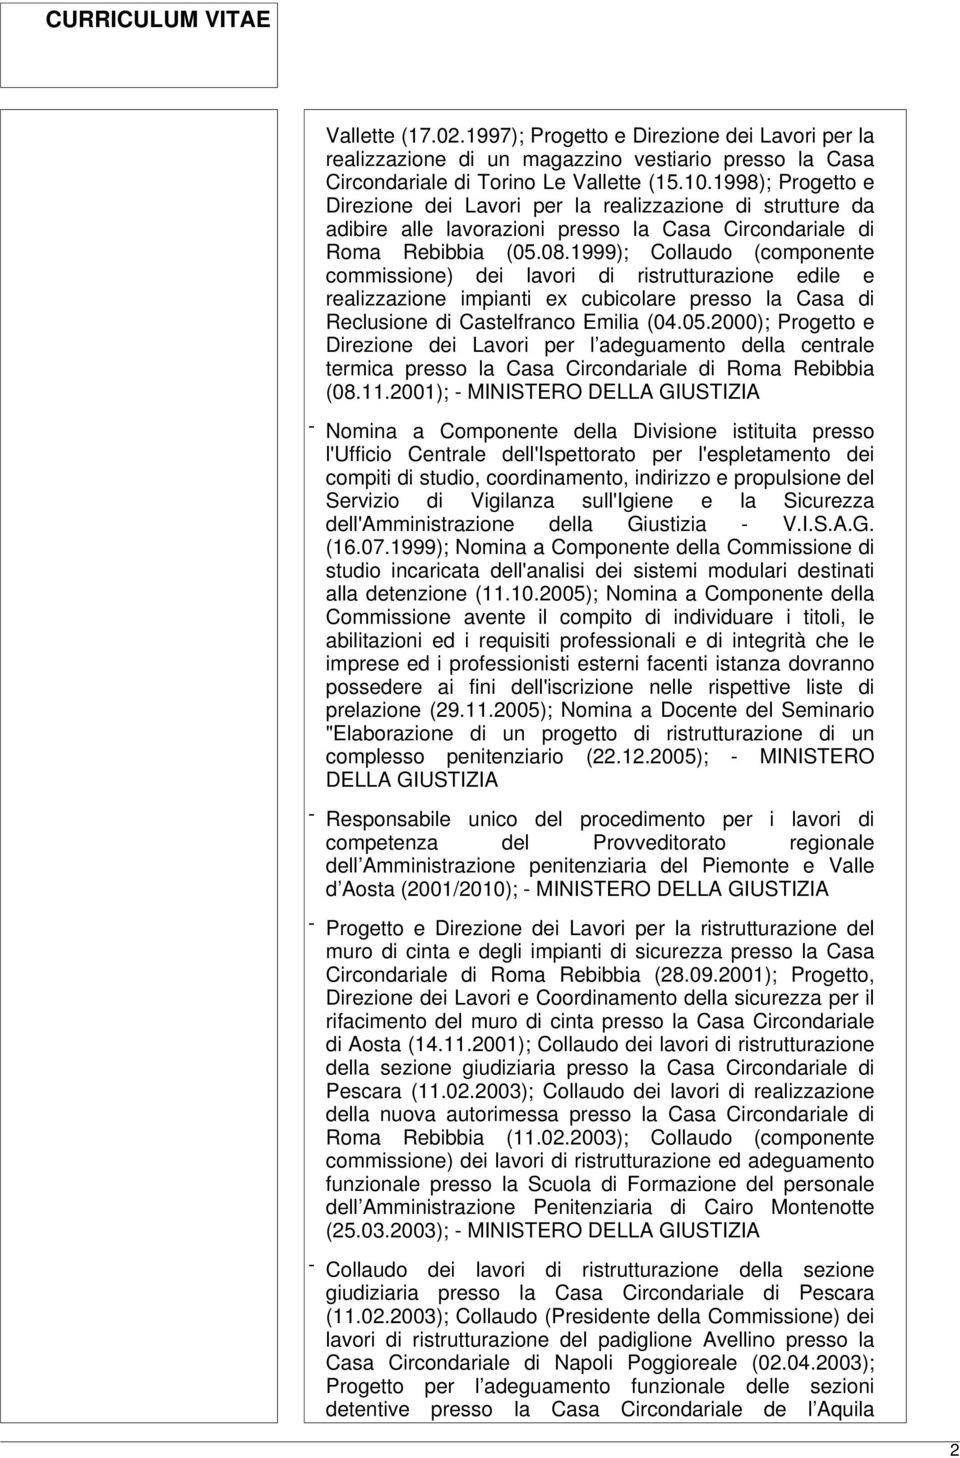 1999); Collaudo (componente commissione) dei lavori di ristrutturazione edile e realizzazione impianti ex cubicolare presso la Casa di Reclusione di Castelfranco Emilia (04.05.